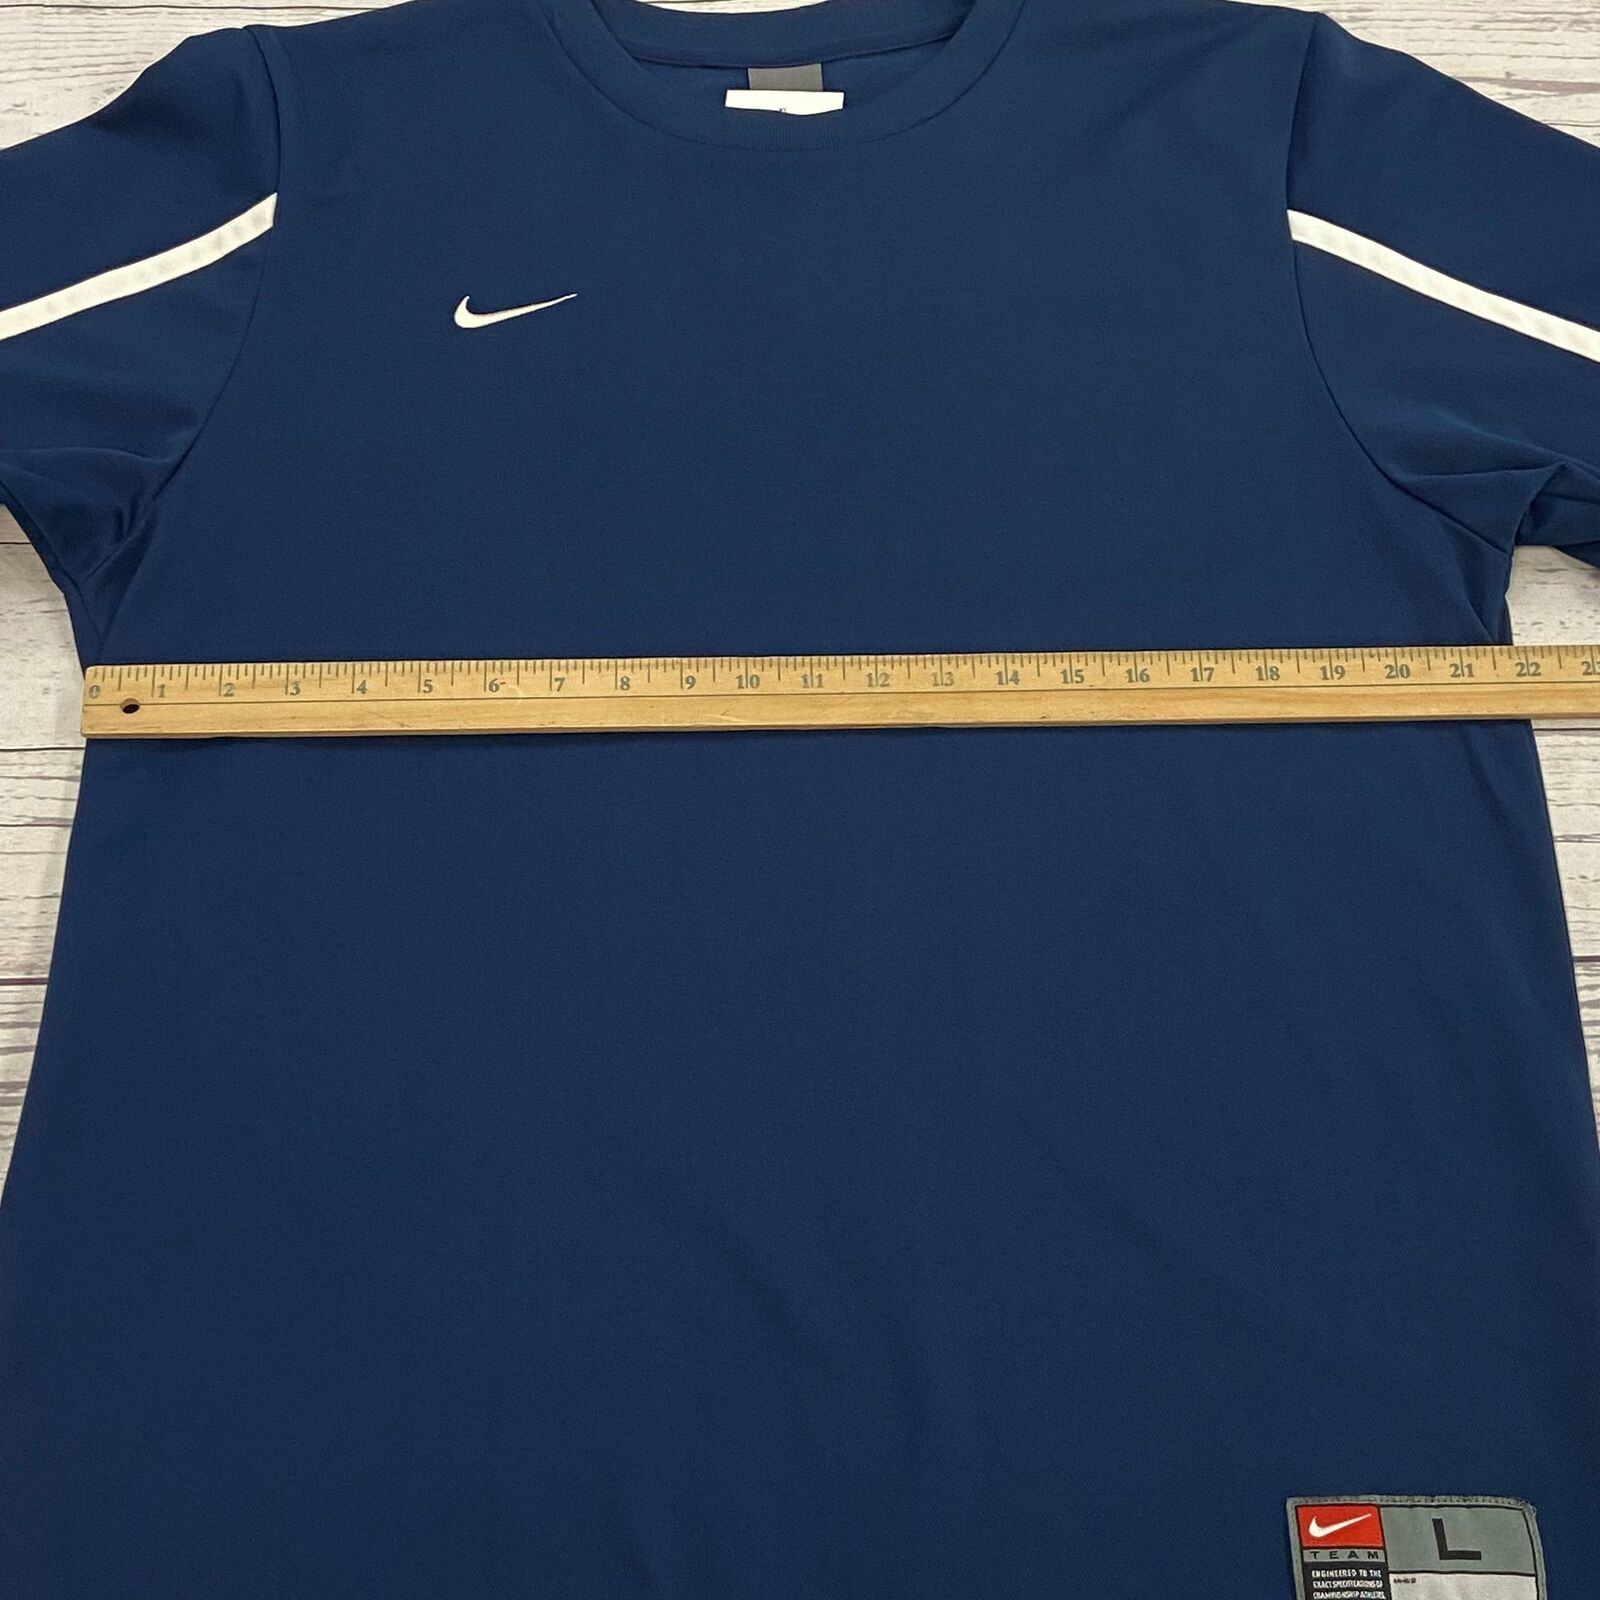 Vintage Nike Blue Athletic Short Sleeve T-Shirt Men Size L - beyond exchange